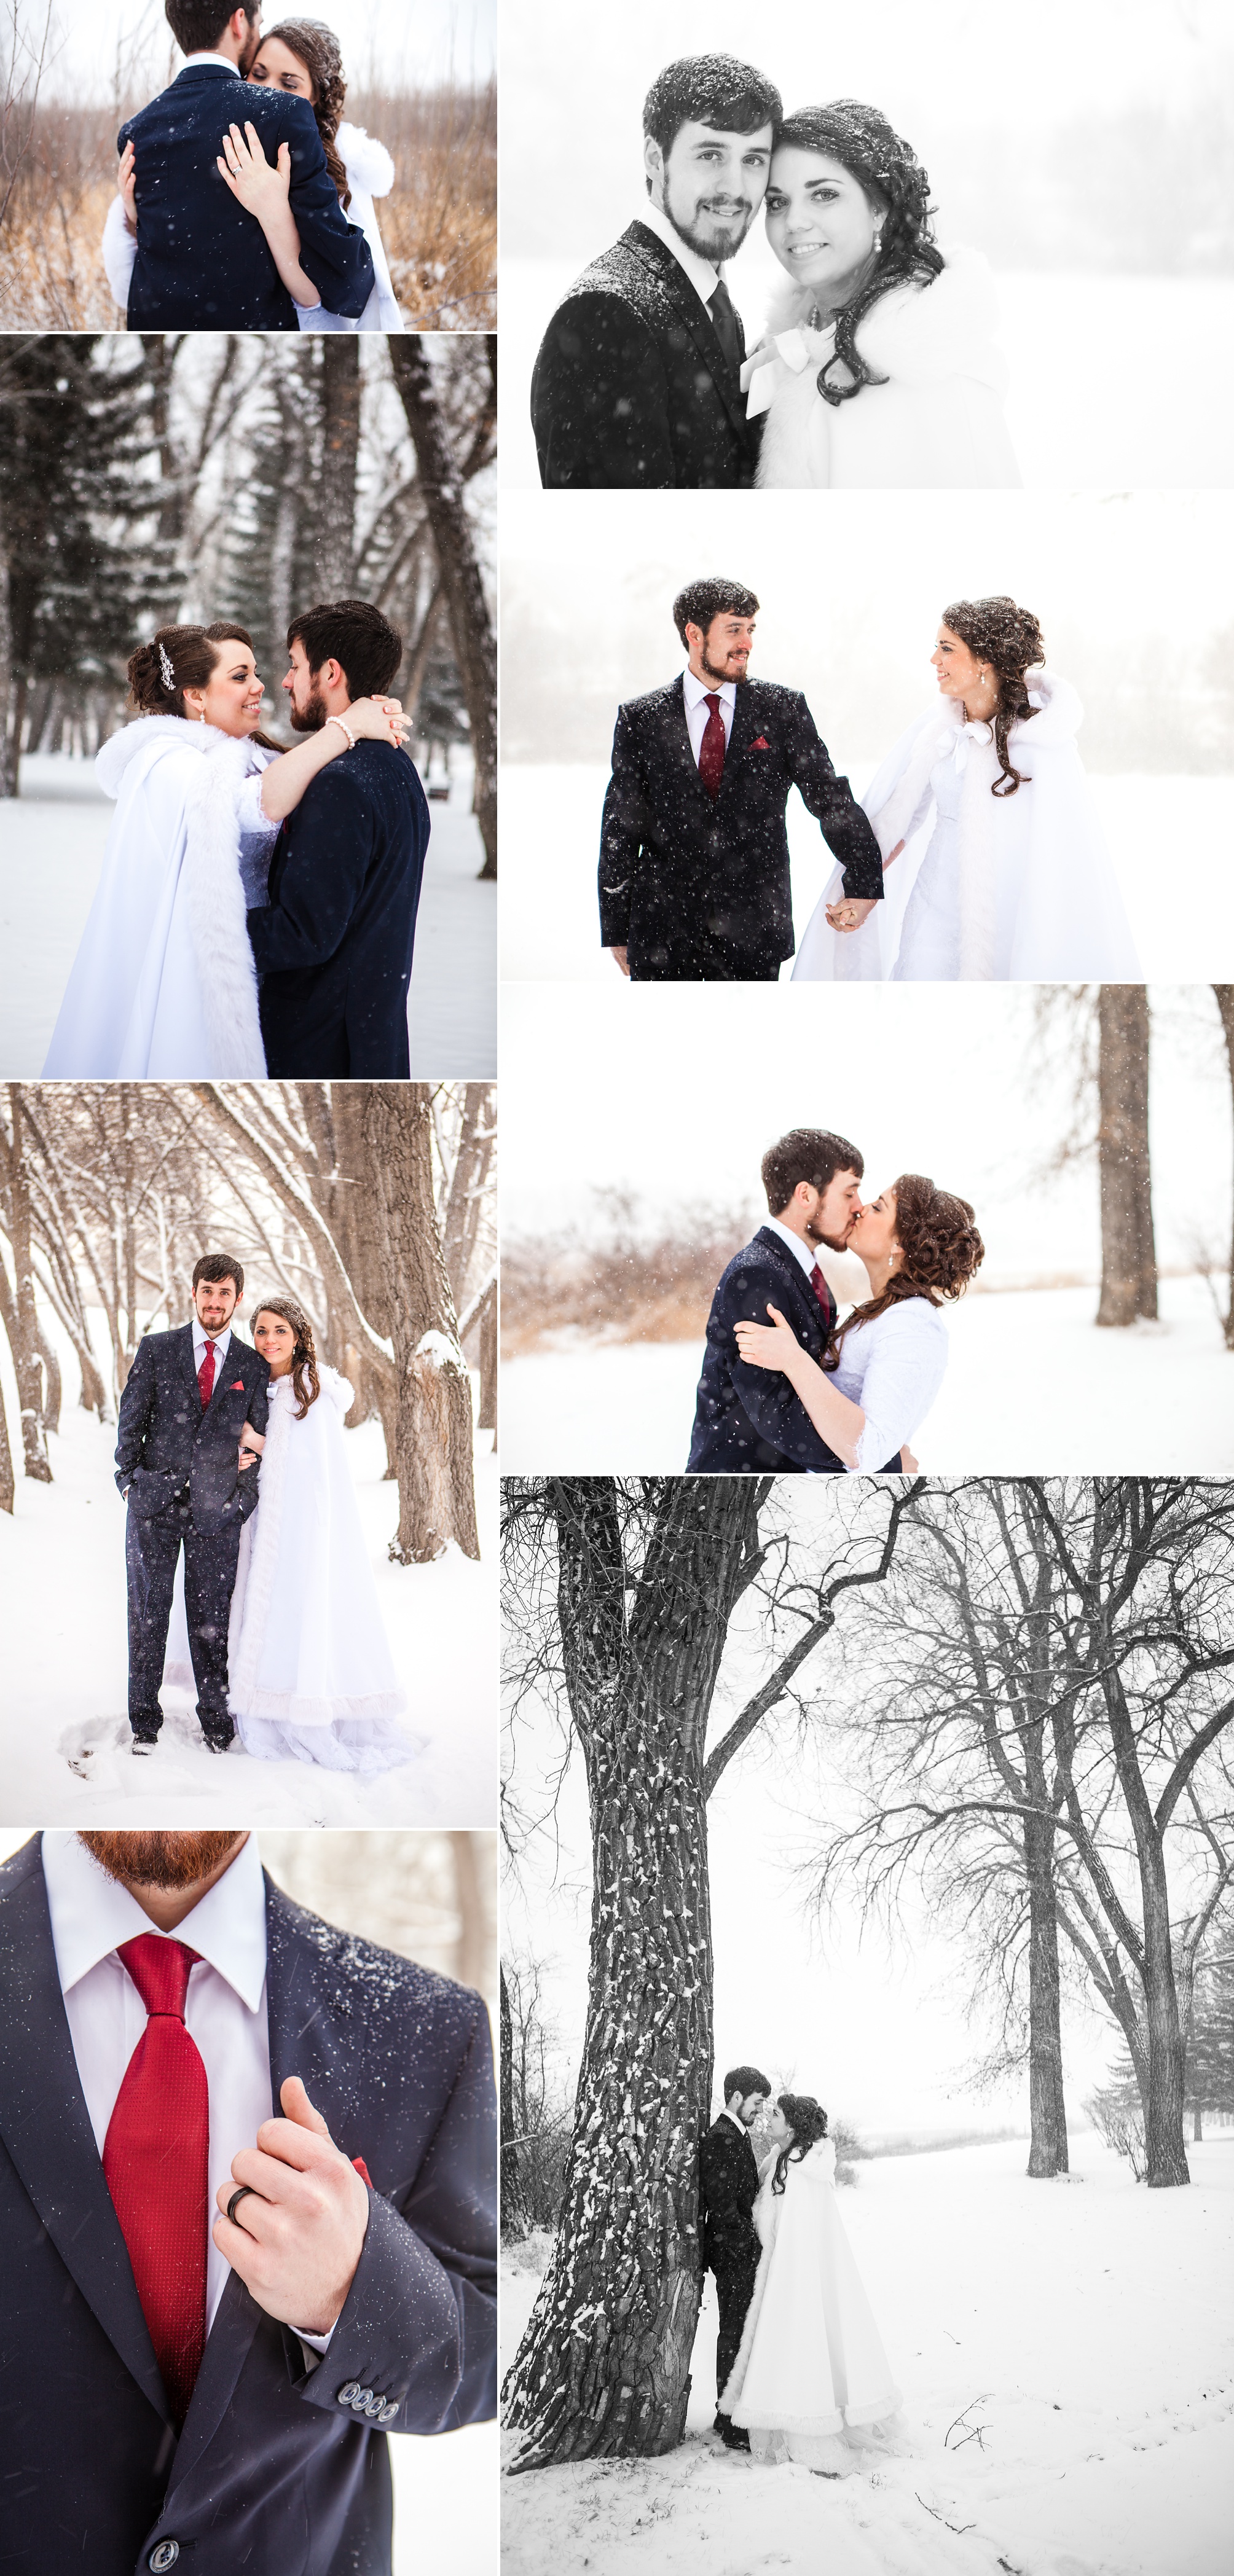 Alex and Kim's Winter Wonderland Wedding